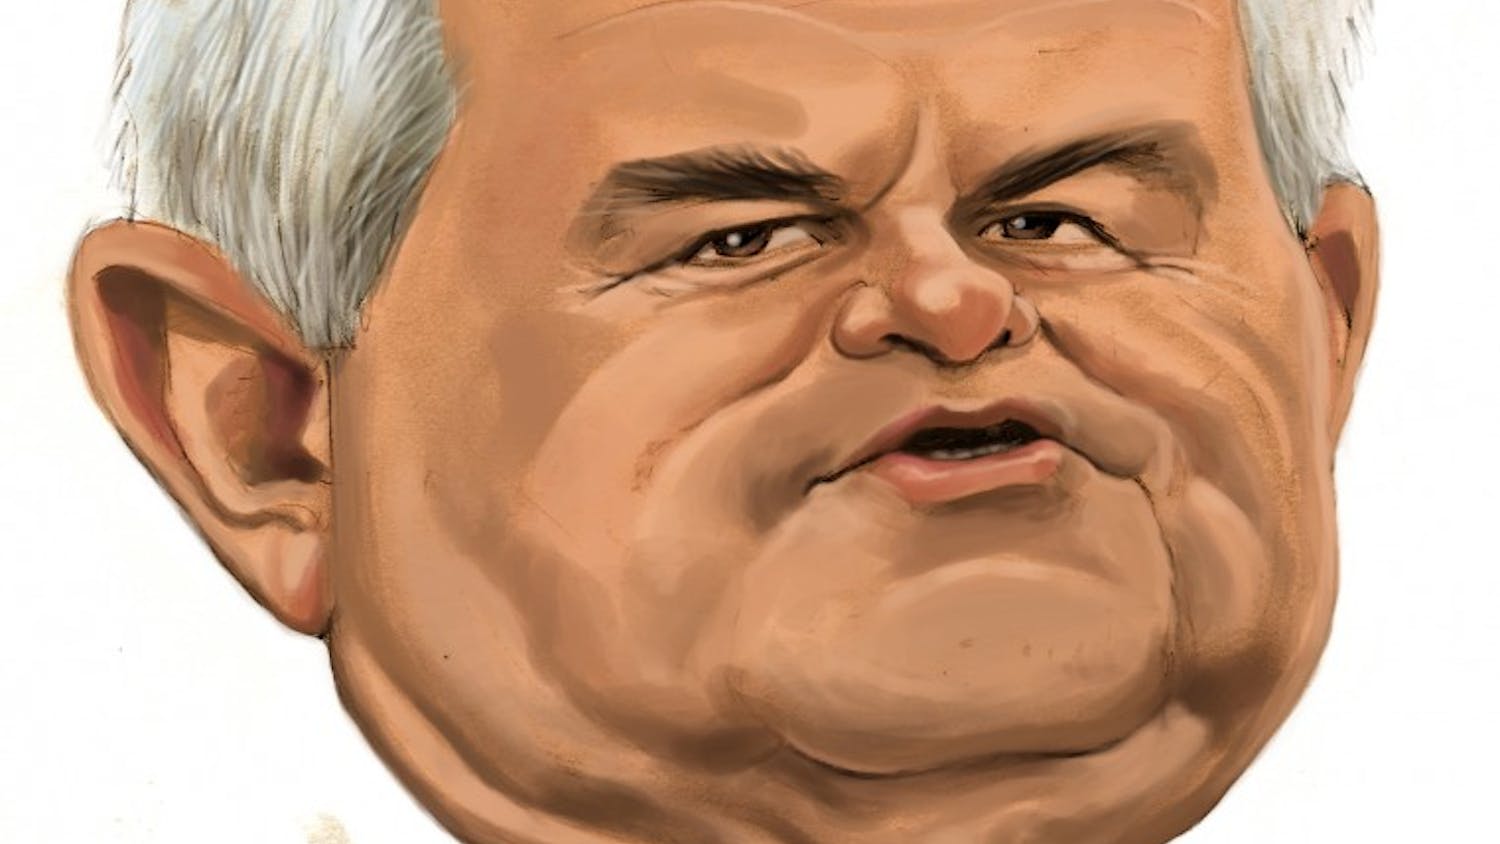 20110720 Newt Gingrich